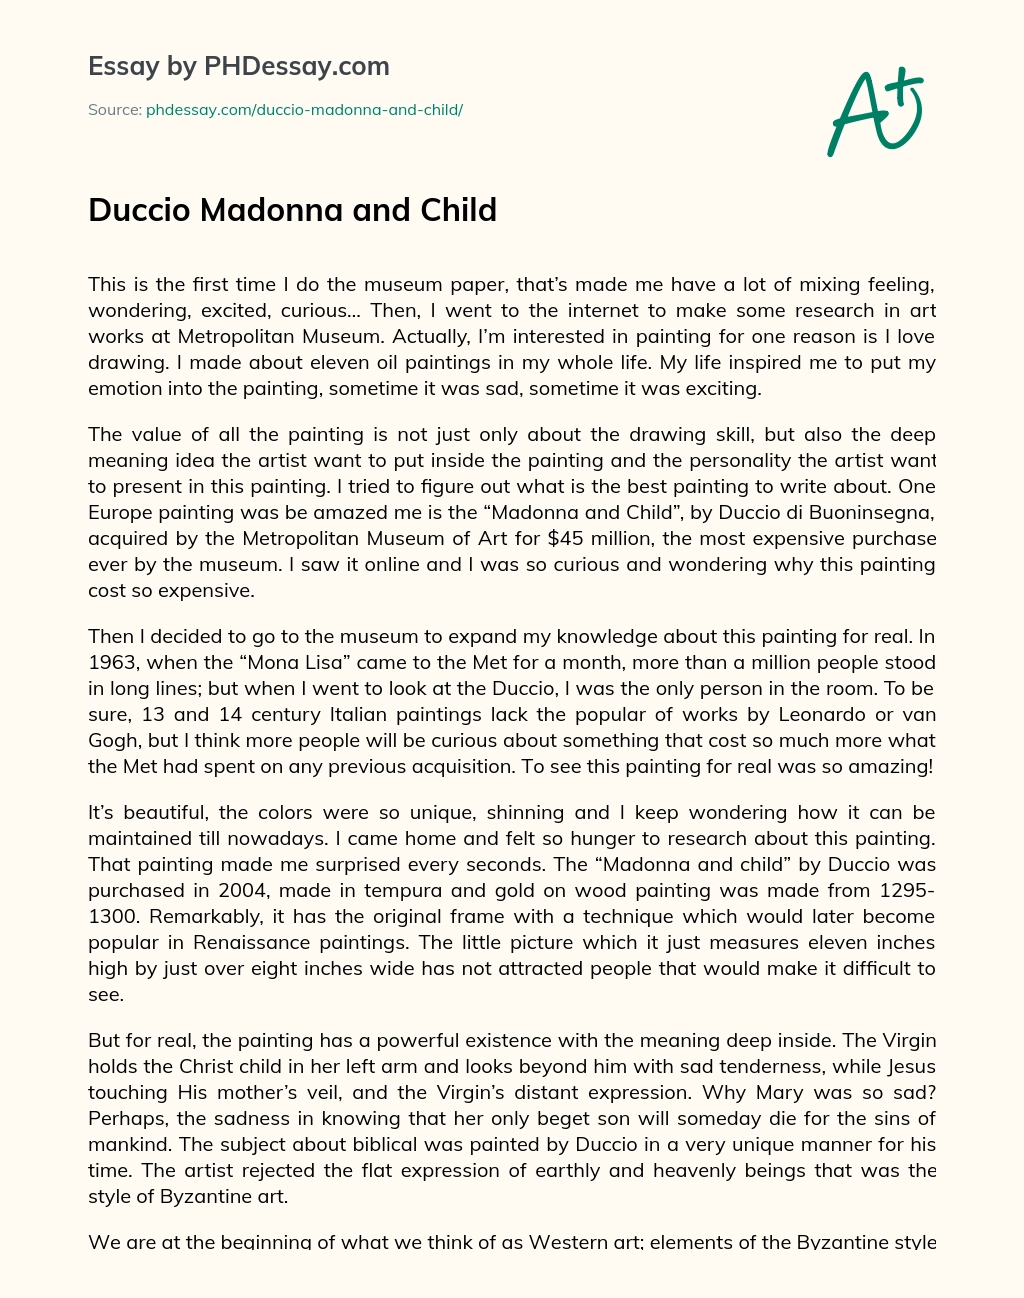 Duccio Madonna and Child essay